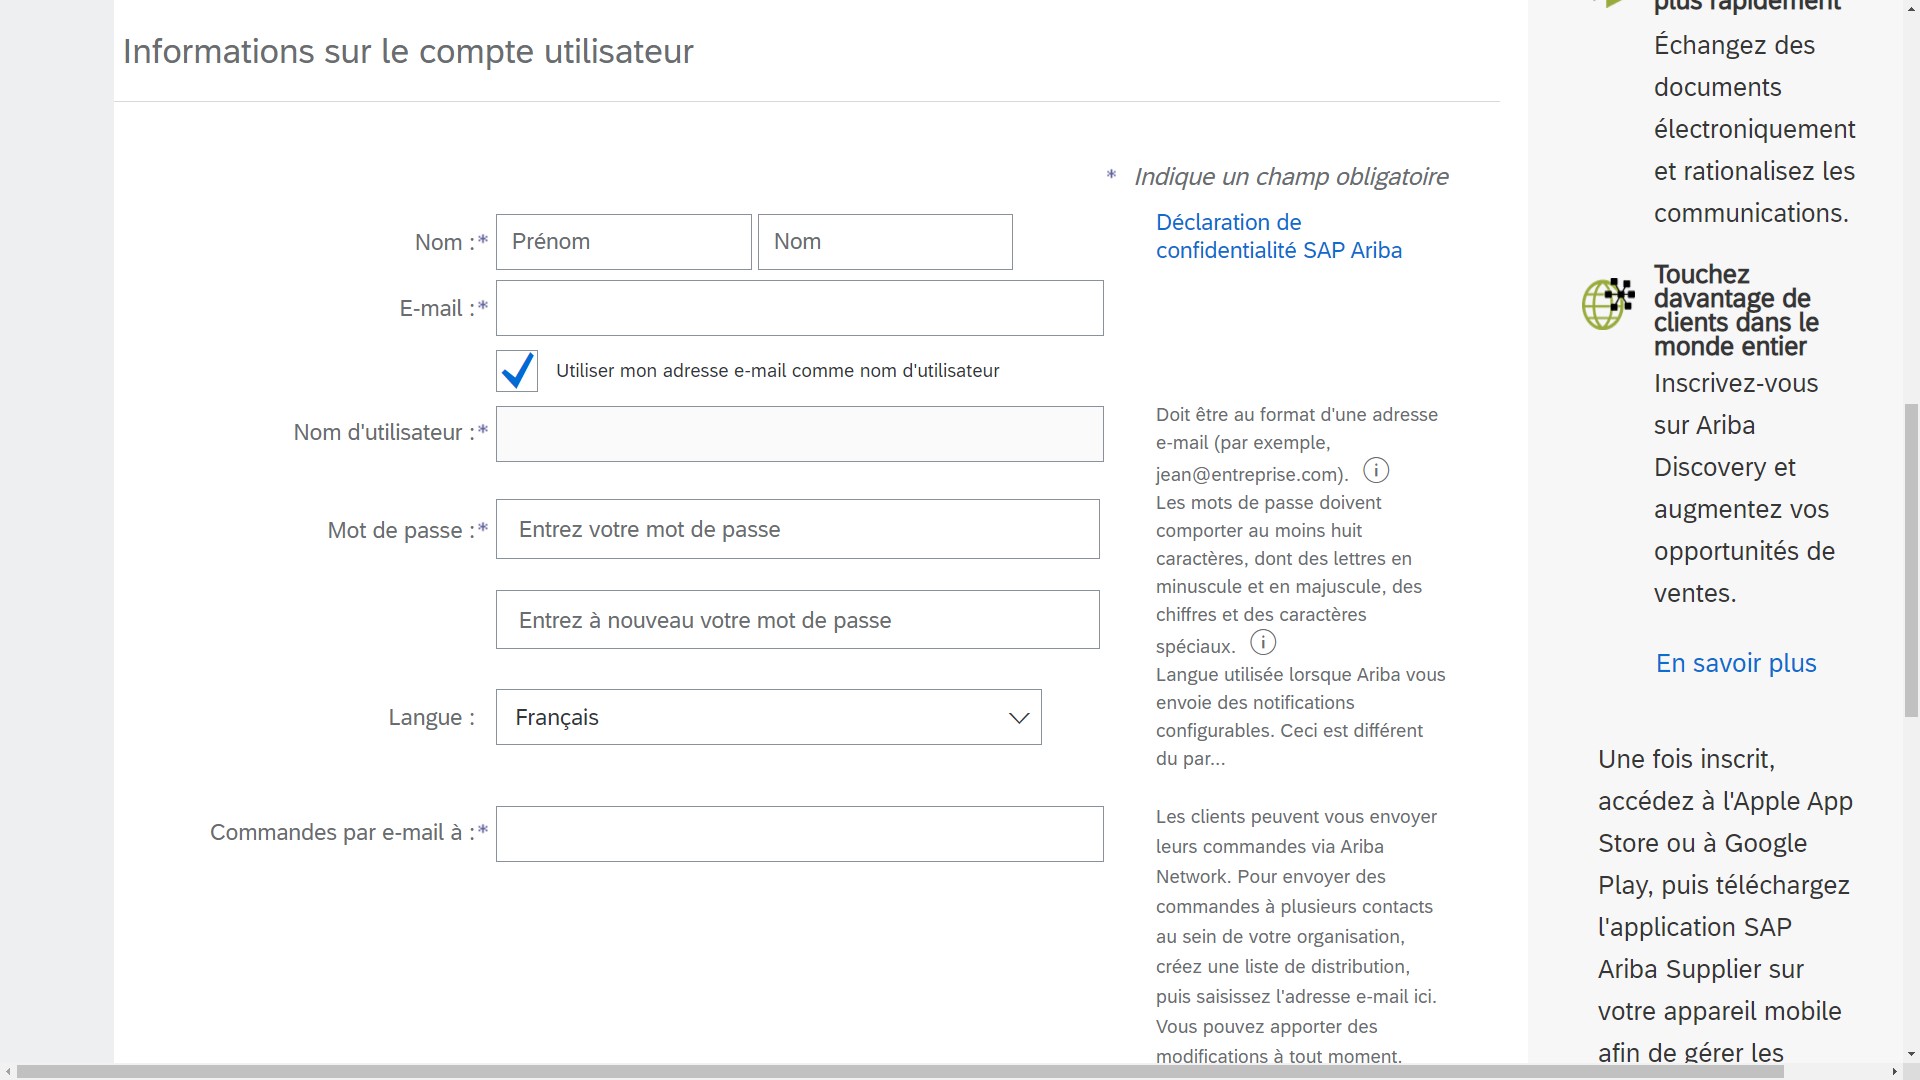 Saisie d’écran de la section Informations sur le compte utilisateur de la page d’inscription SAP Ariba.